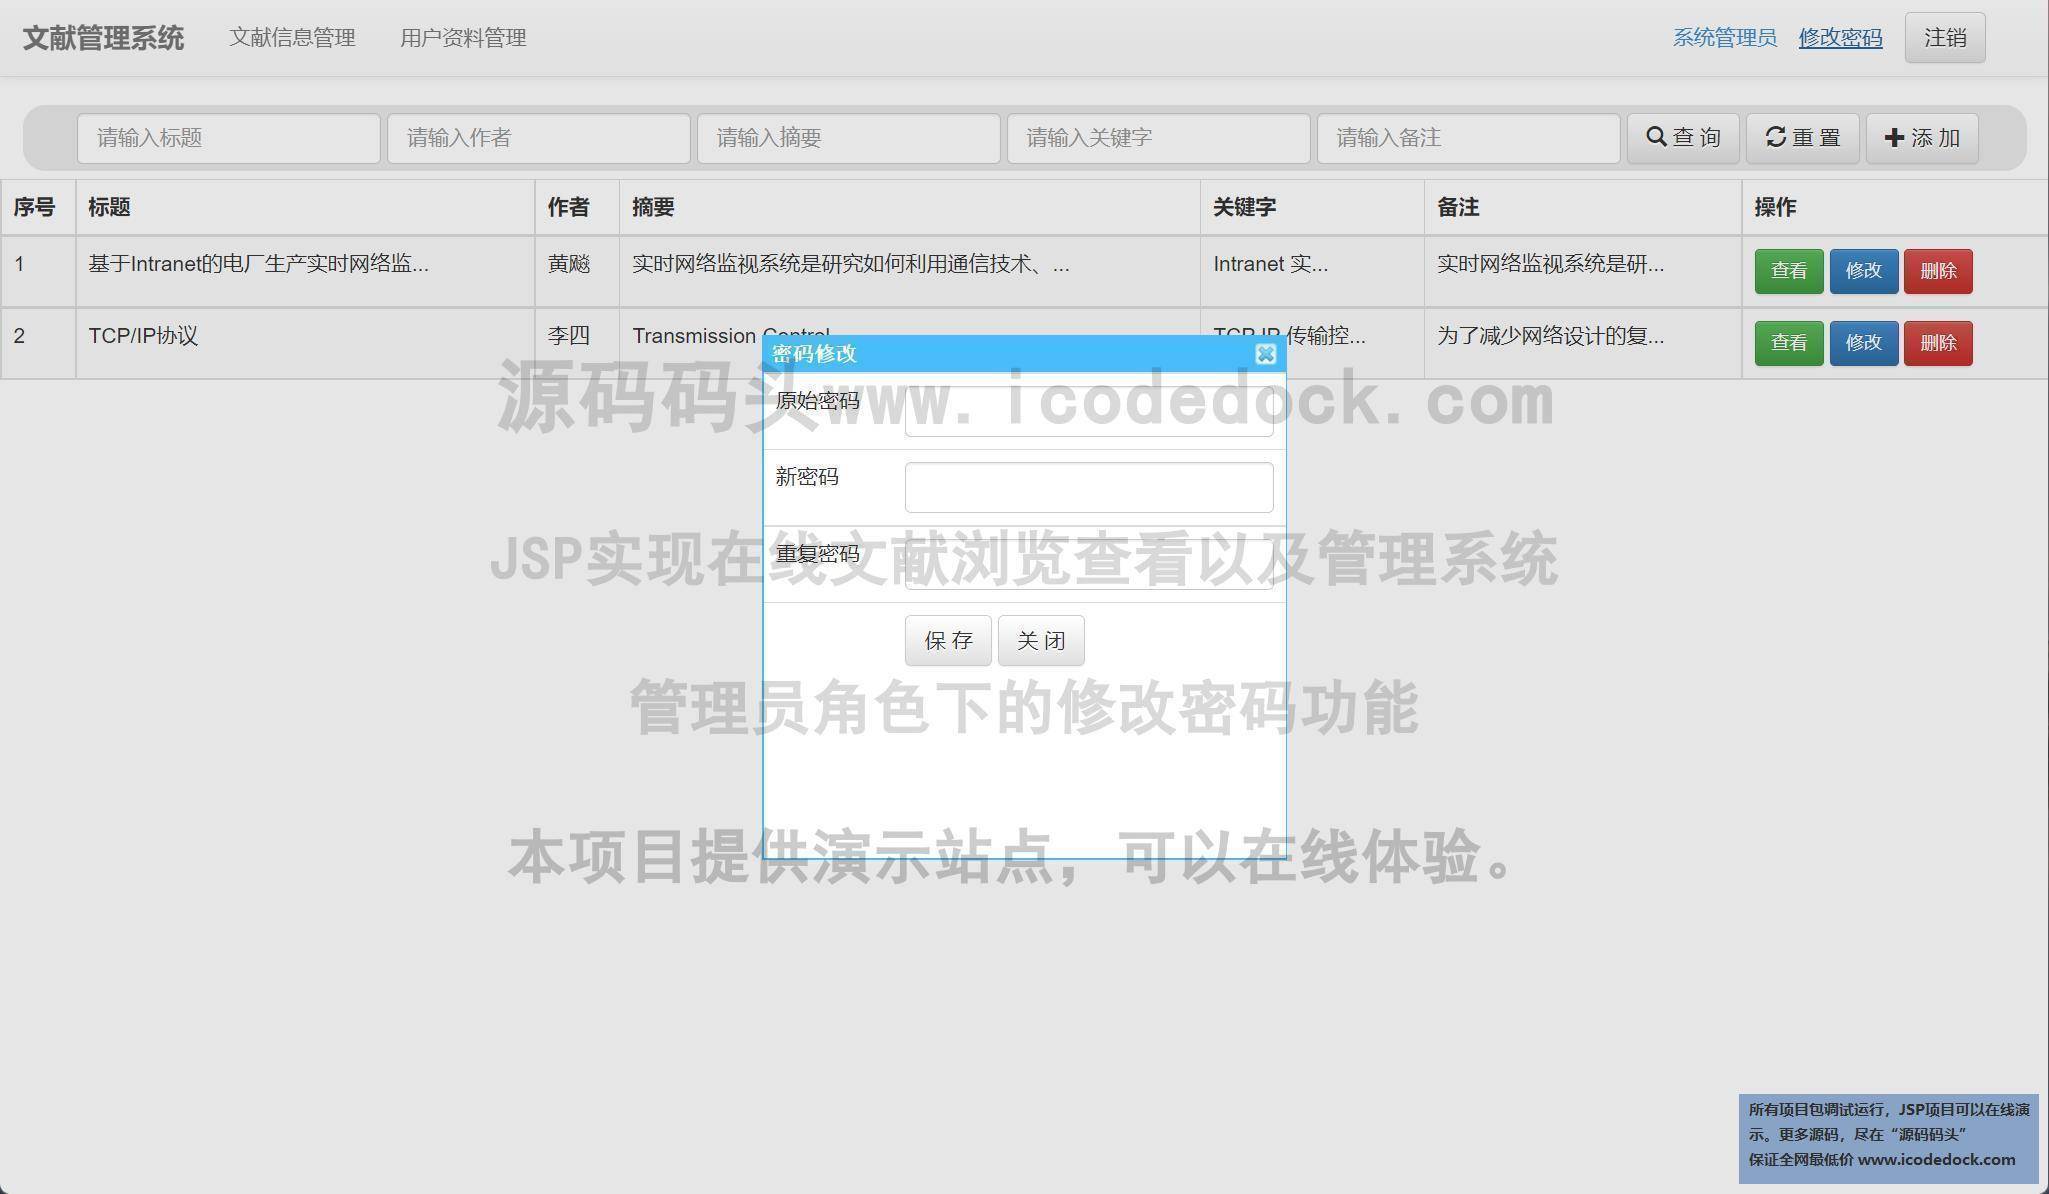 源码码头-JSP实现在线文献浏览查看以及管理系统-管理员角色-修改密码